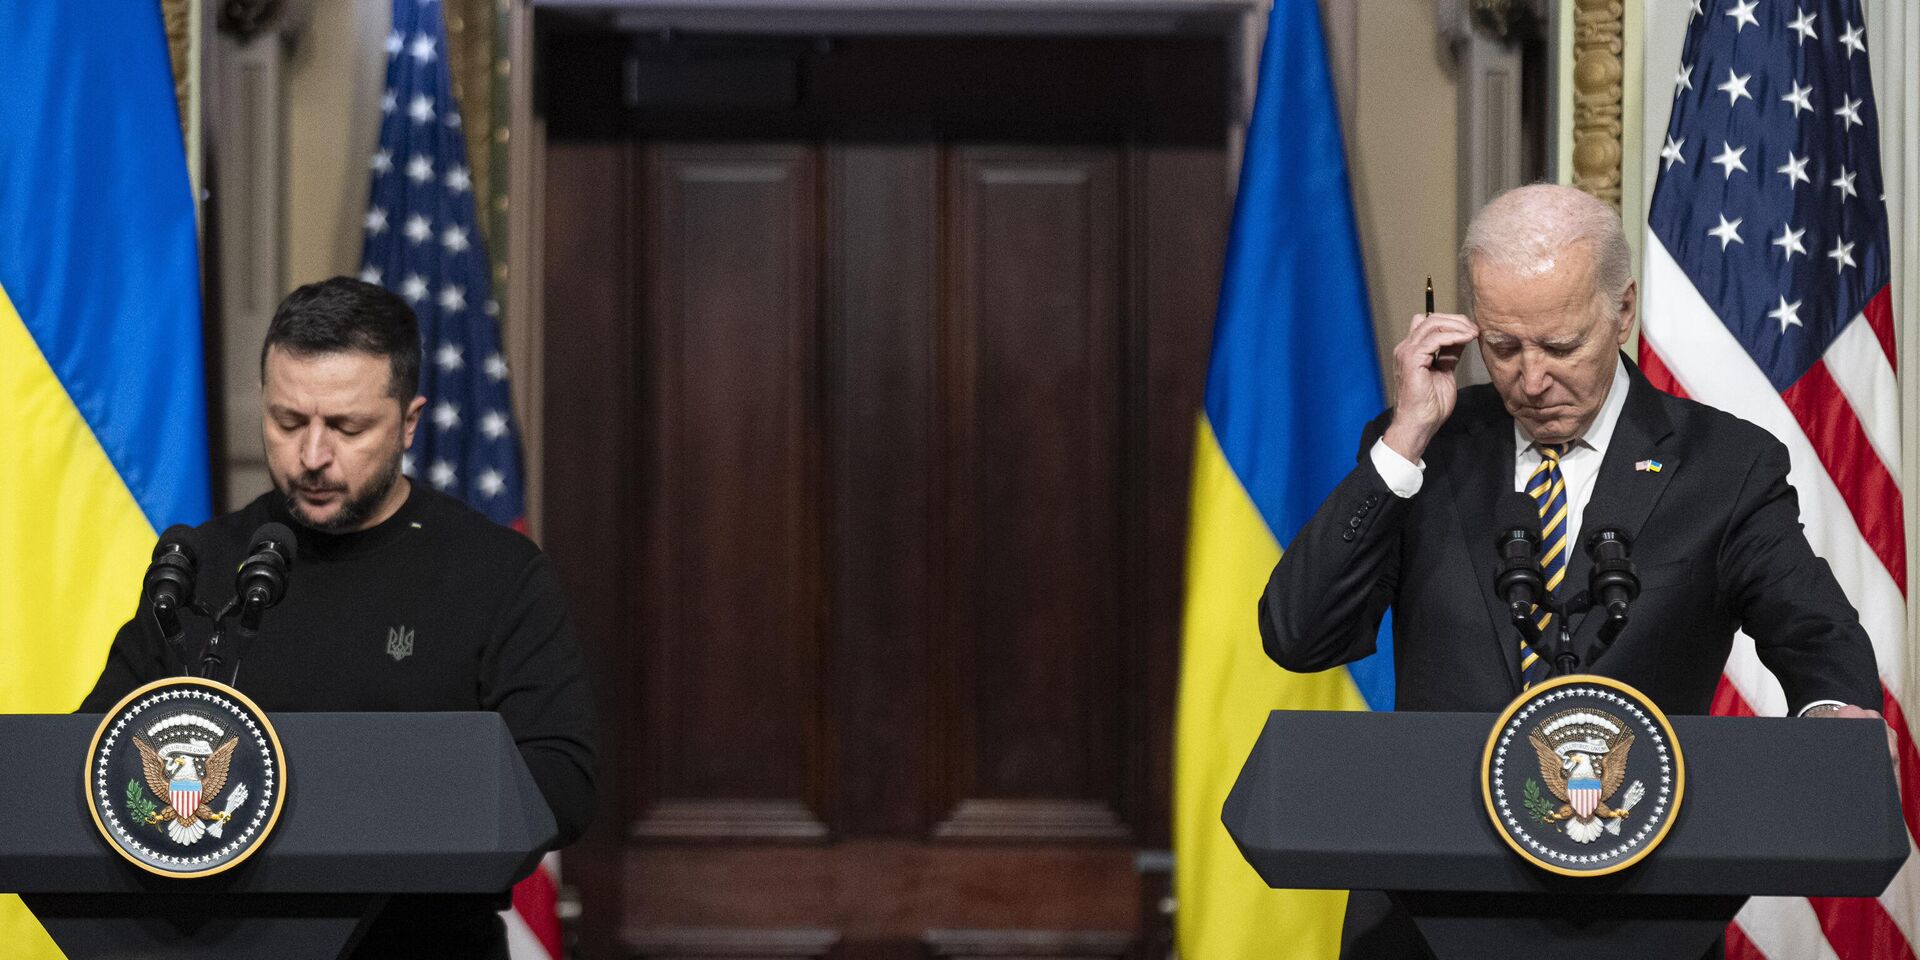 Президент Украины Владимир Зеленский и президент США Джо Байден во время пресс-конференции в Белом доме в Вашингтоне 12 декабря 2023 года - ИноСМИ, 1920, 23.12.2023